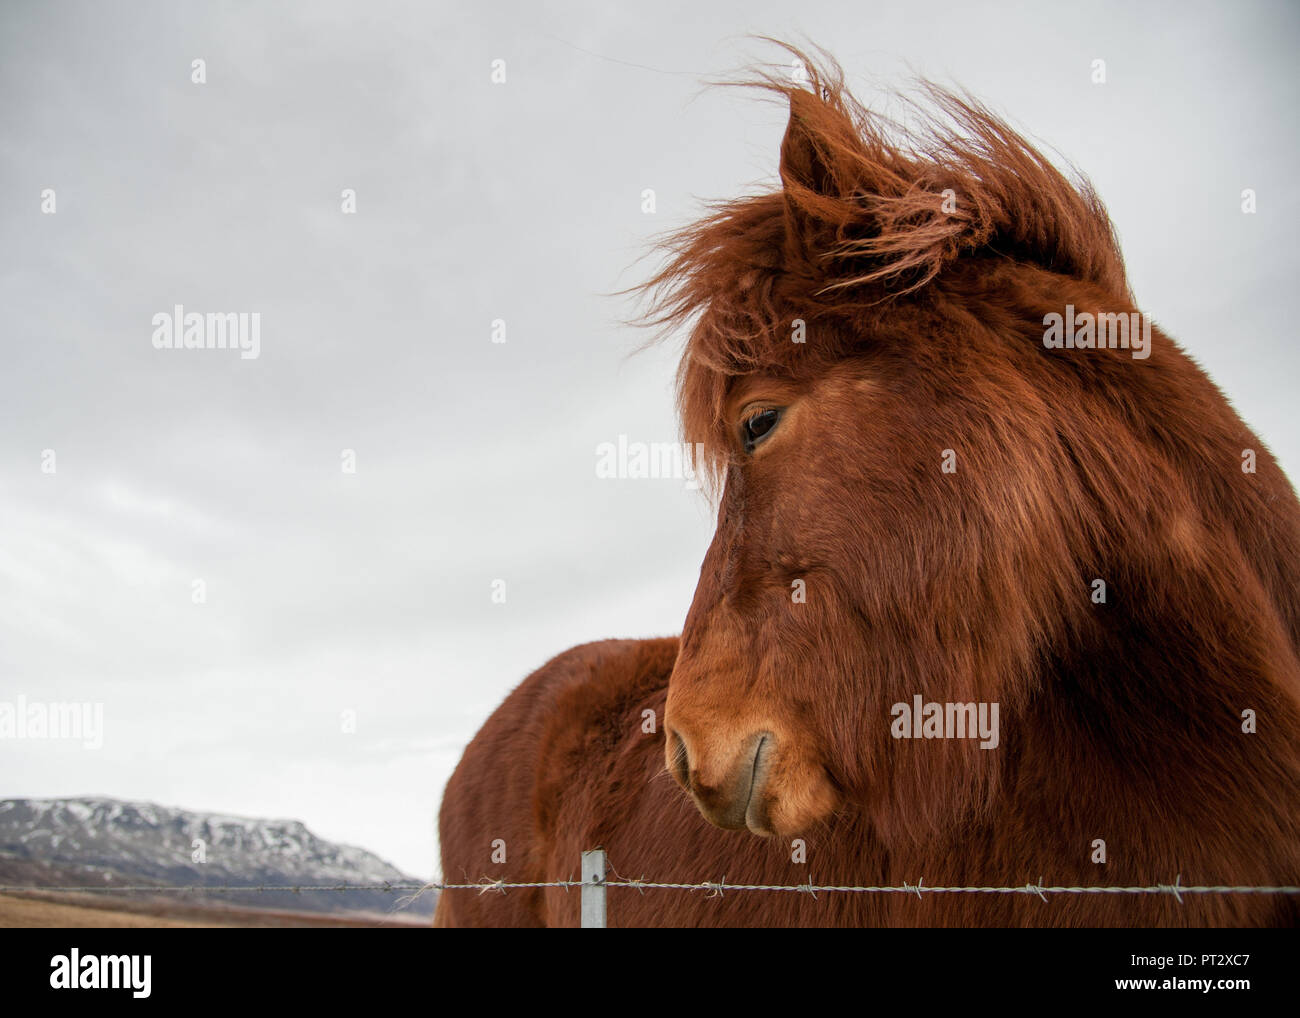 Isländer, auf Island im Winter fotografiert. Stockfoto